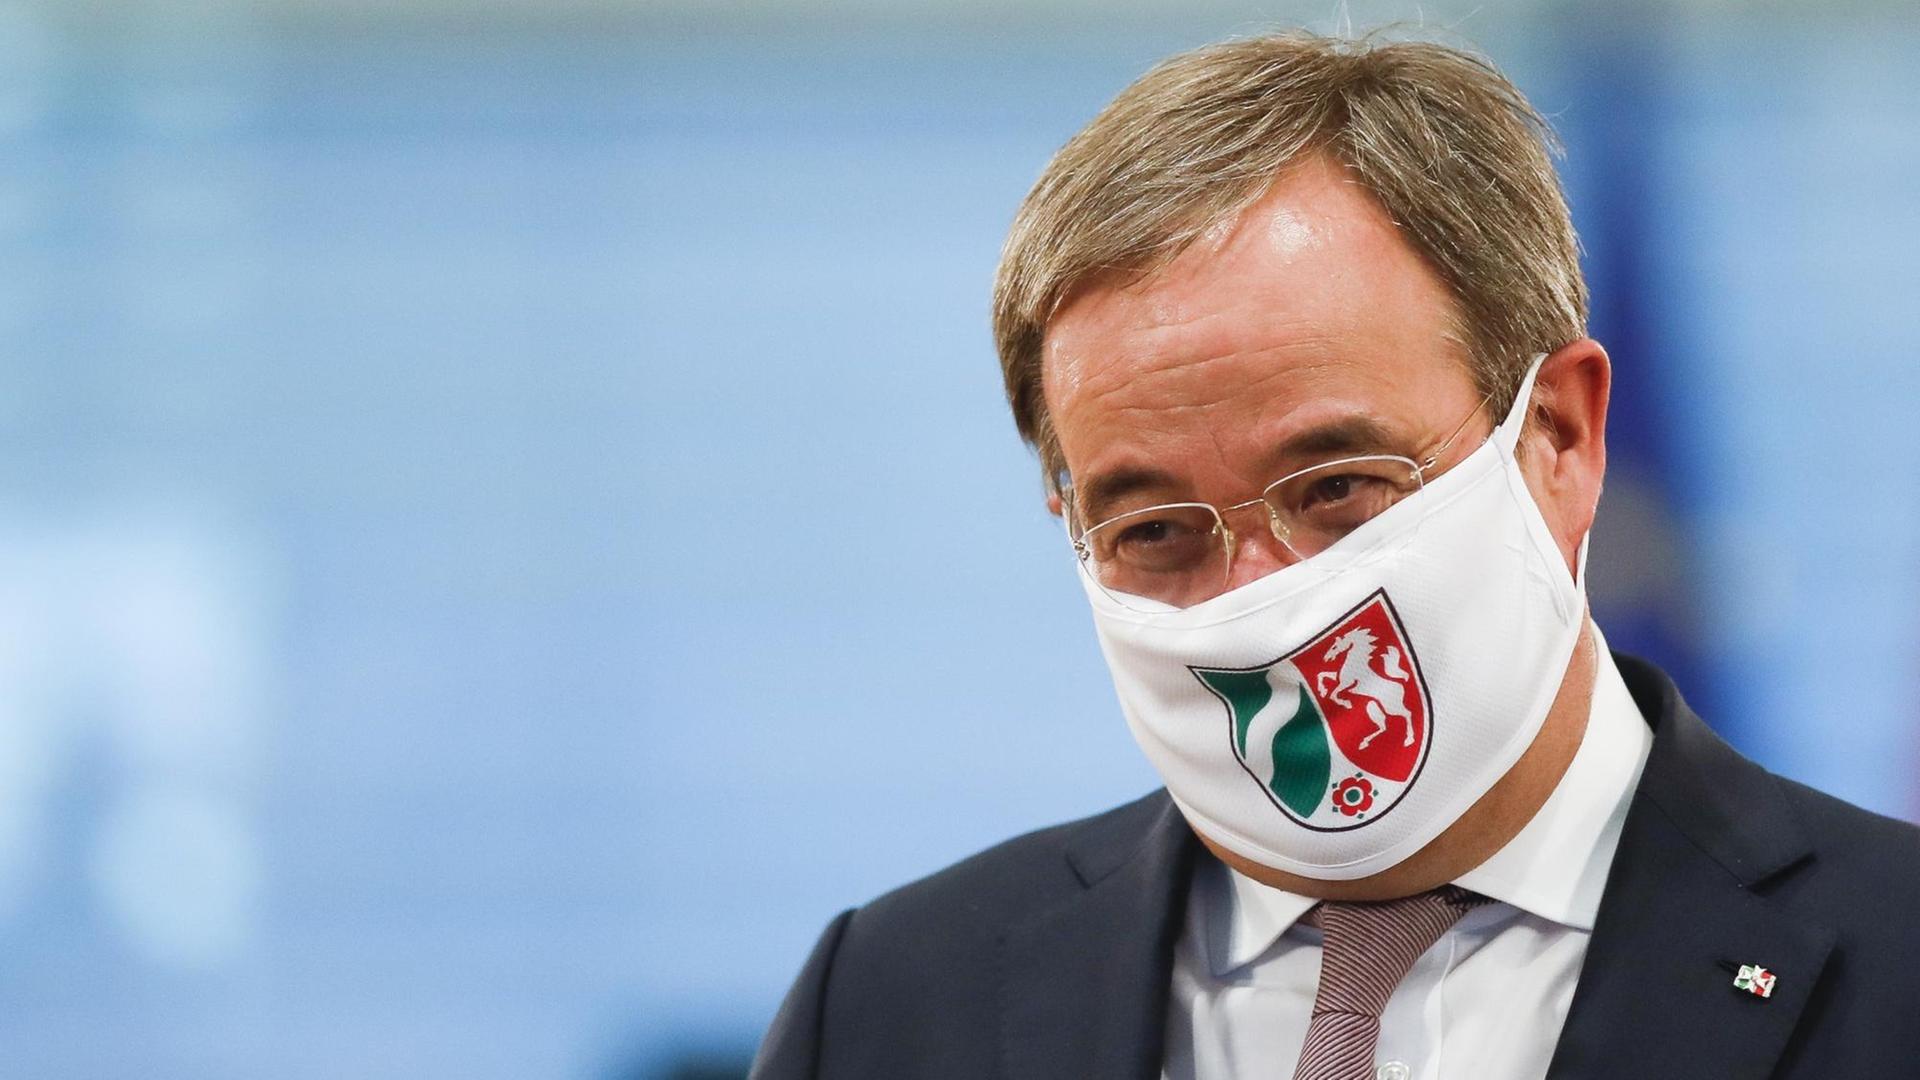 Armin Laschet, Ministerpräsident von Nordrhein-Westfalen, trägt eine Gesichtsmaske mit dem Wappen von Nordrhein-Westfalen, als er zu einer Gesprächsrunde zwischen Bundeskanzlerin Merkel und Ministerpräsidenten der Bundesländer im Kanzleramt eintrifft.